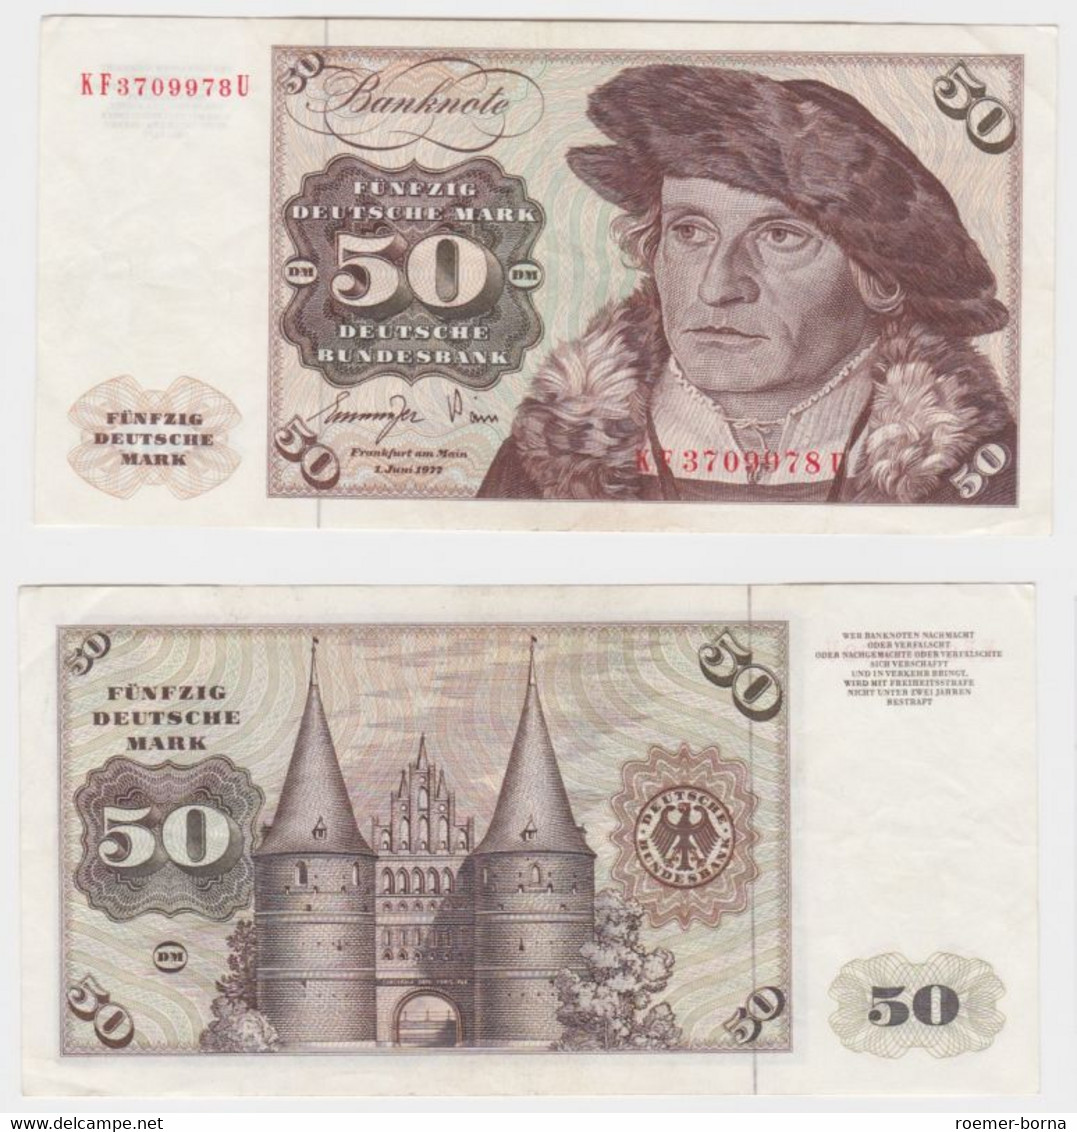 T145444 Banknote 50 DM Deutsche Mark Ro. 277a Schein 1.Juni 1977 KN KF 3709978 U - 50 DM